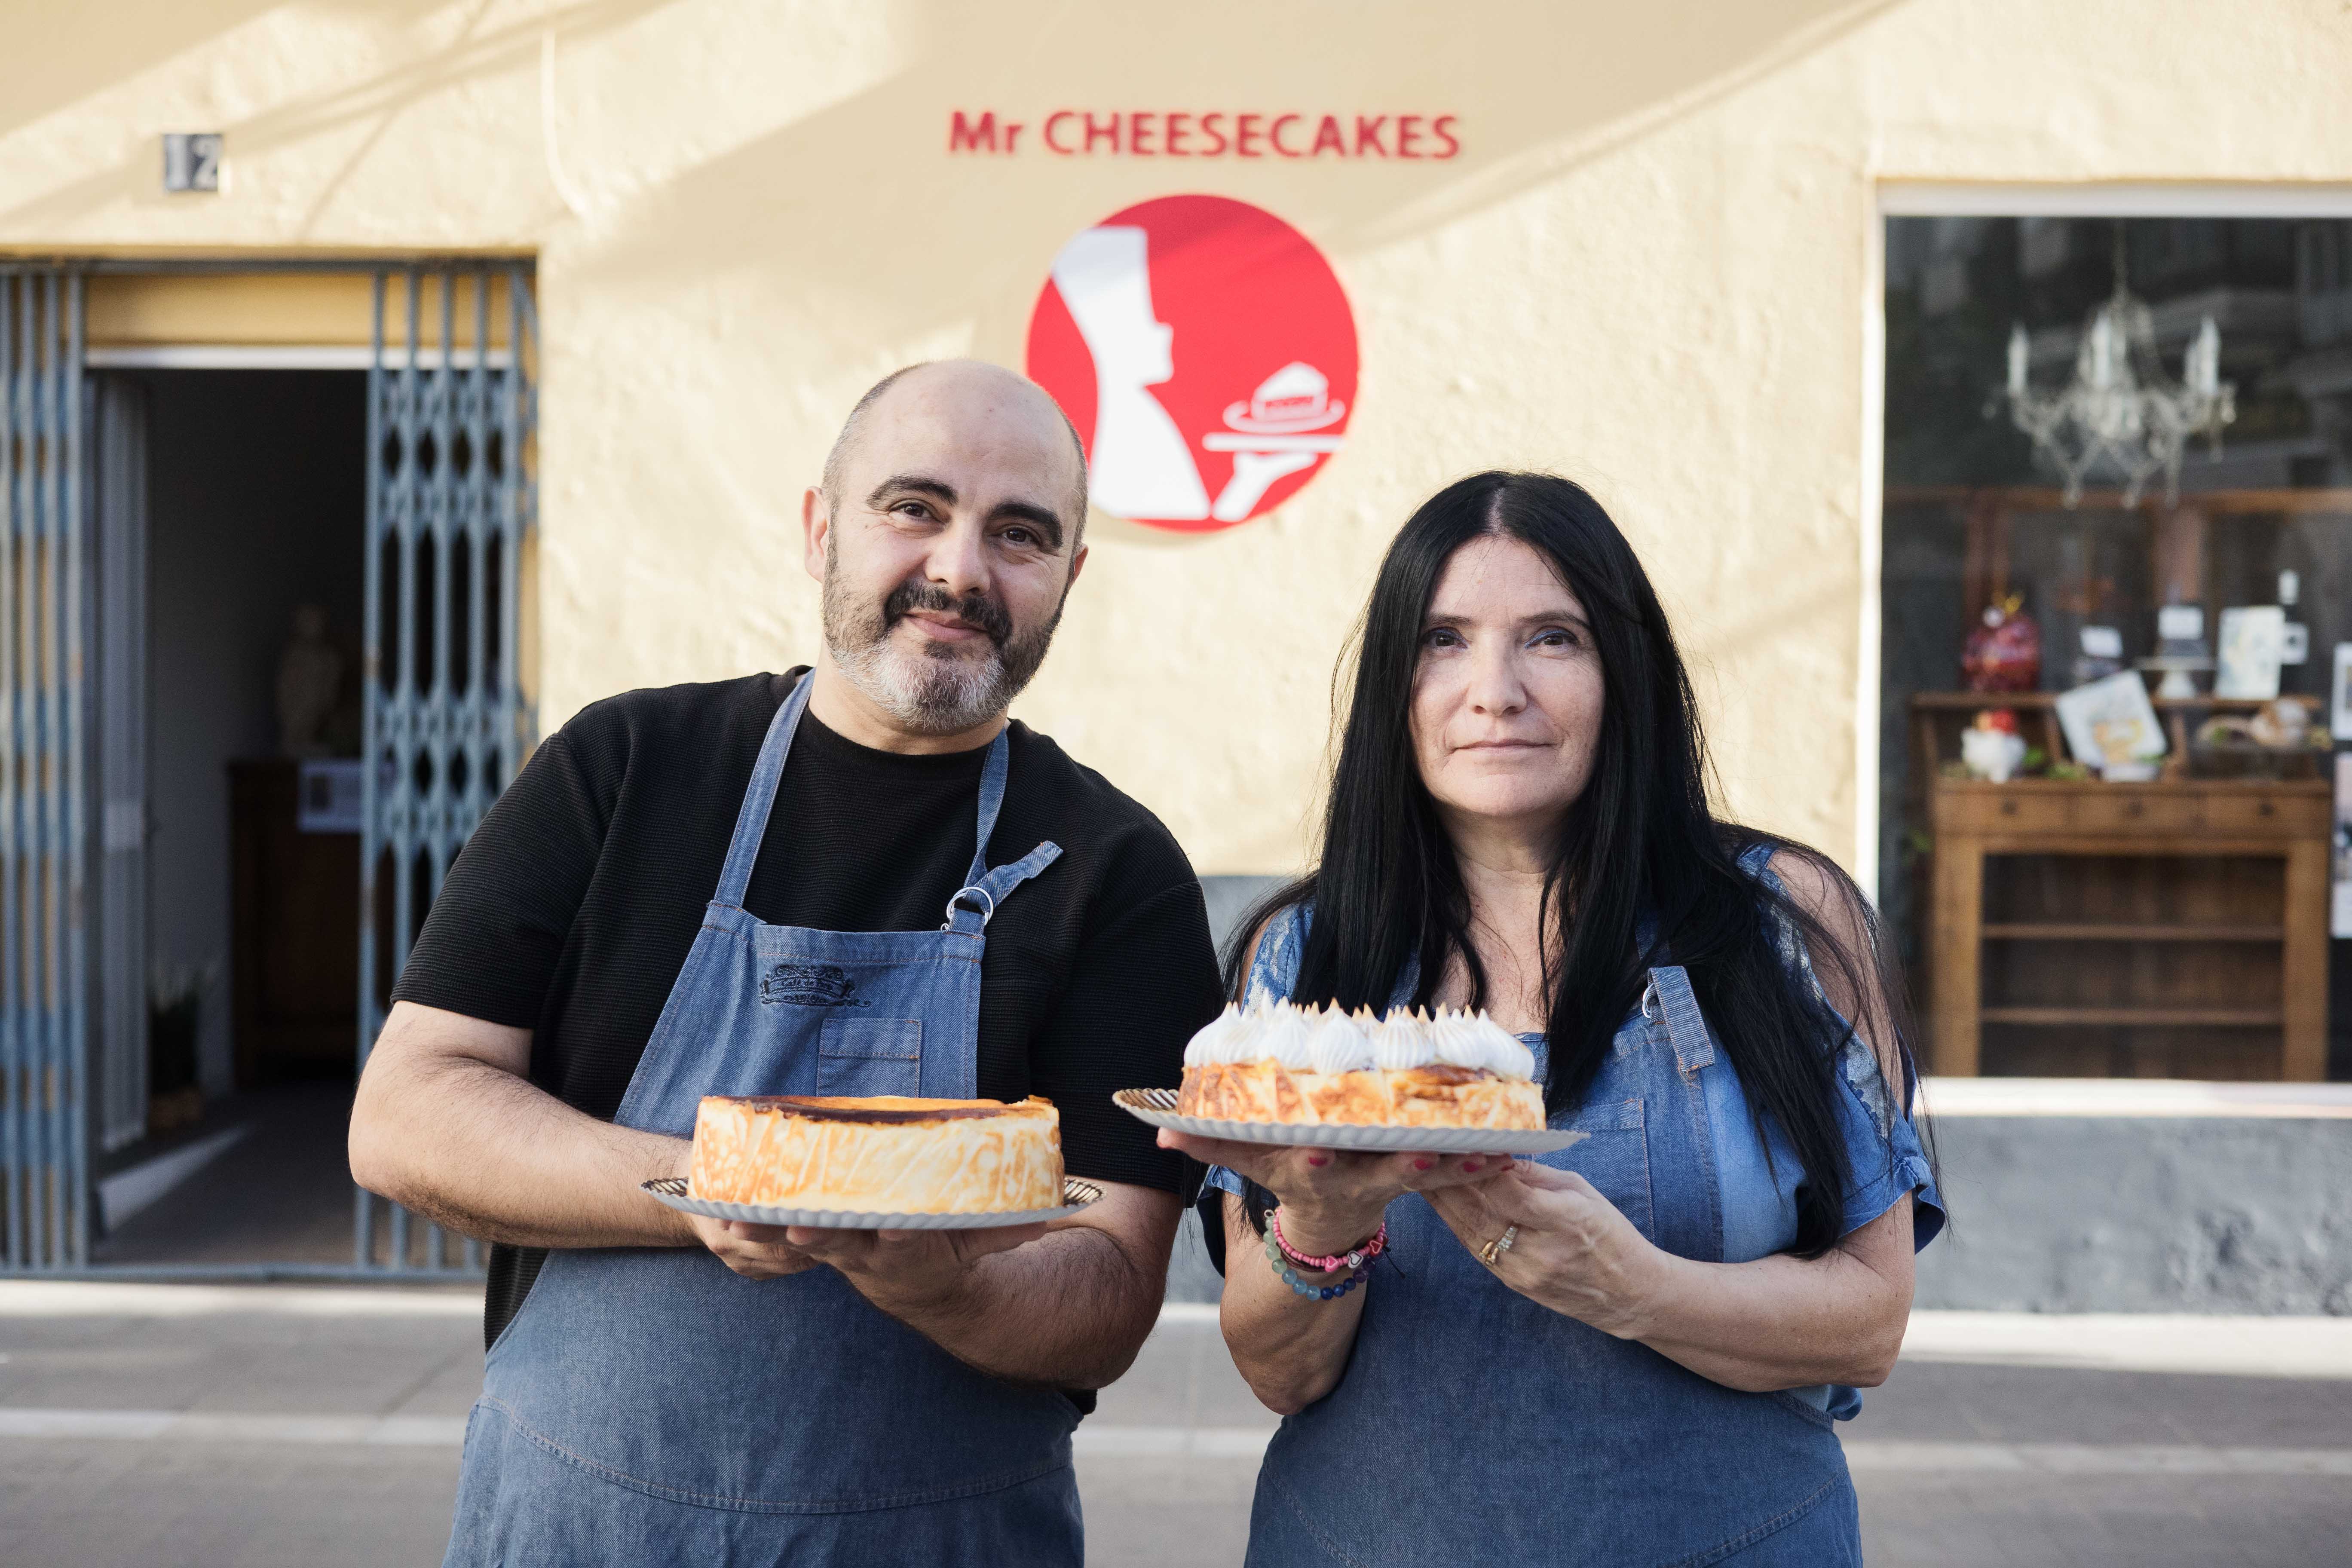 Iñaki de Cáceres  y Monique Presa, dueños de Mr. Cheesecakes.  "Un oasis en Sanlúcar para los amantes de la tarta de queso: "La repostería requiere amor y buena materia prima"